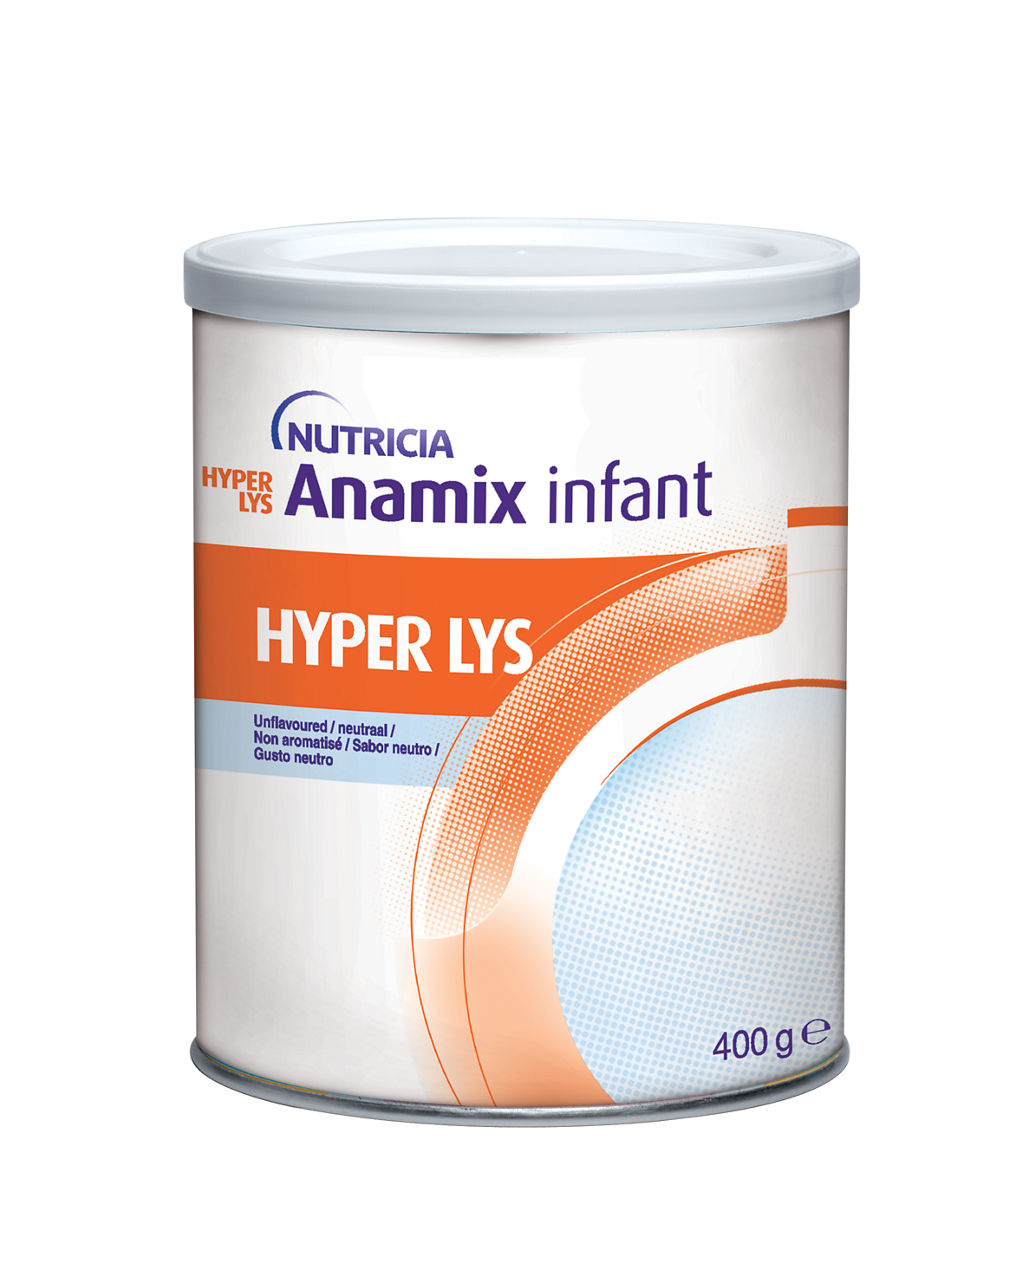 en-GB,Hyper LYS Anamix Infant